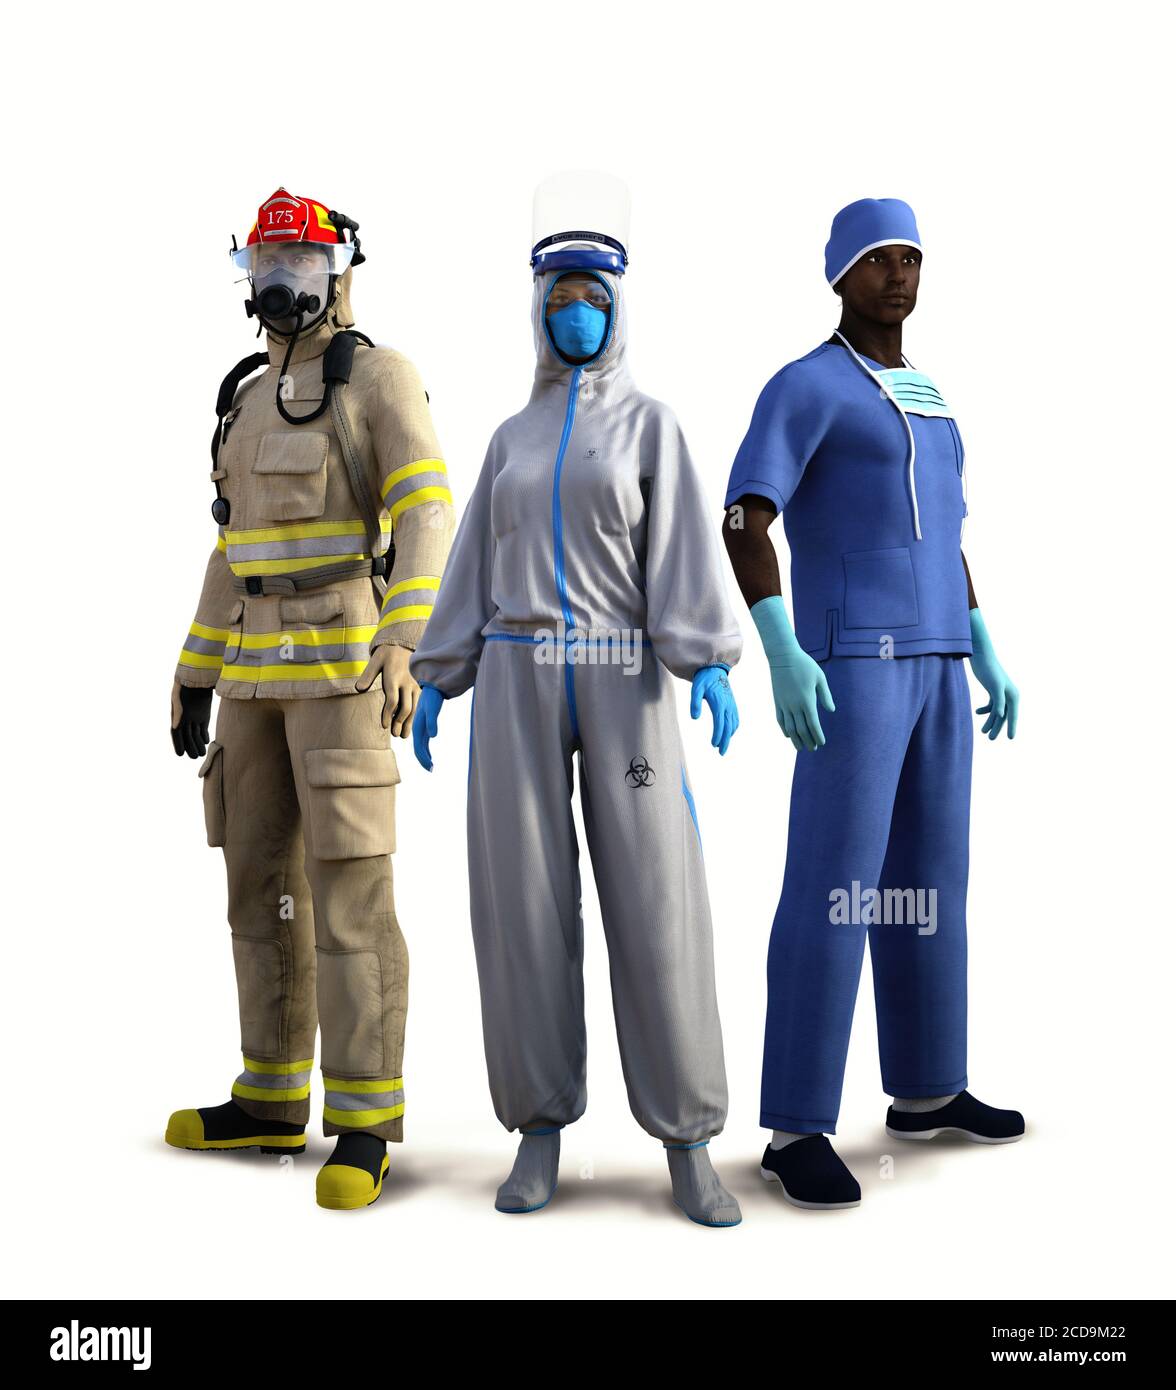 Mutige, essentielle Arbeiter riskieren ihr eigenes Leben, um unser Leben zu retten, Feuerwehrmann, Bio-Krankenschwester, Arzt auf weißem Hintergrund isoliert, bereit, Covid-19 zu bekämpfen Stockfoto